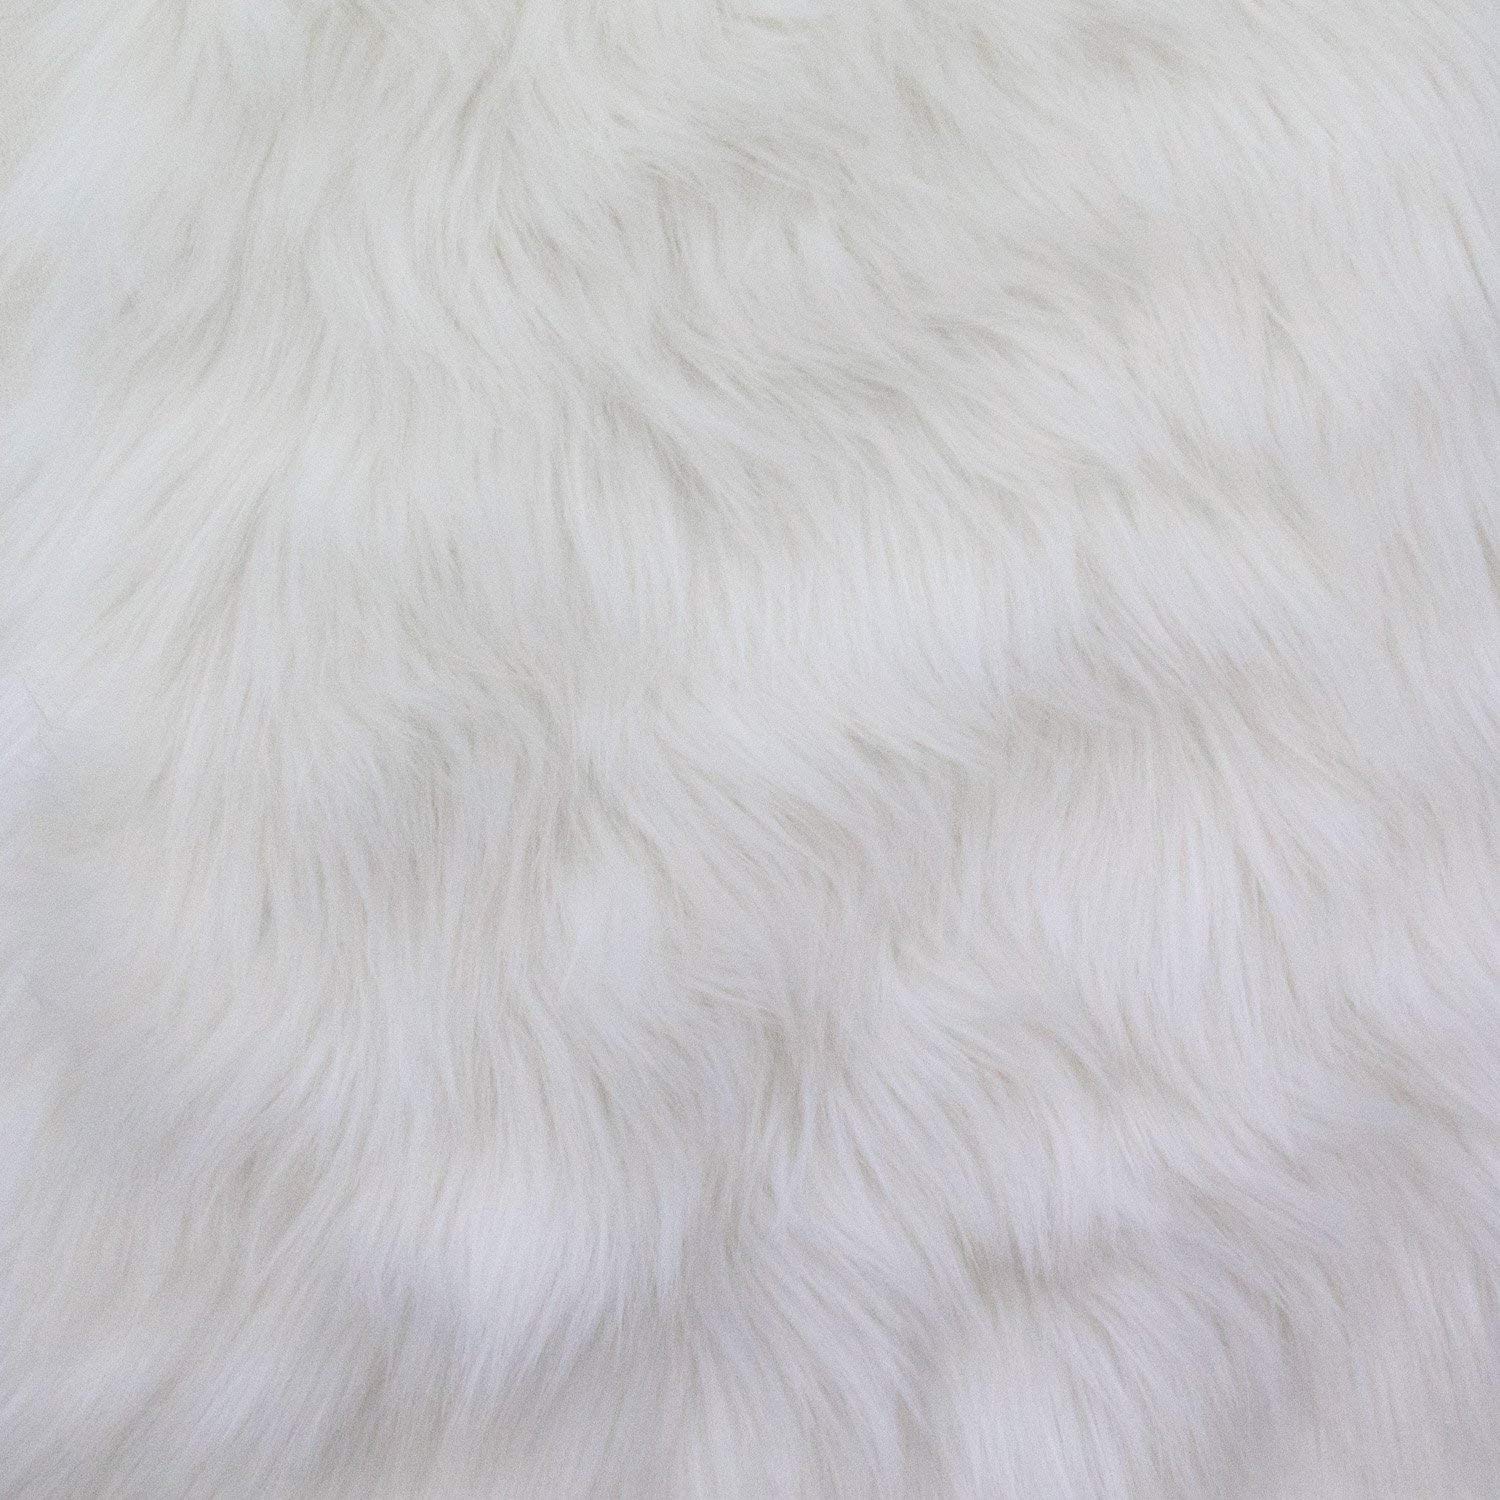 White fur photo